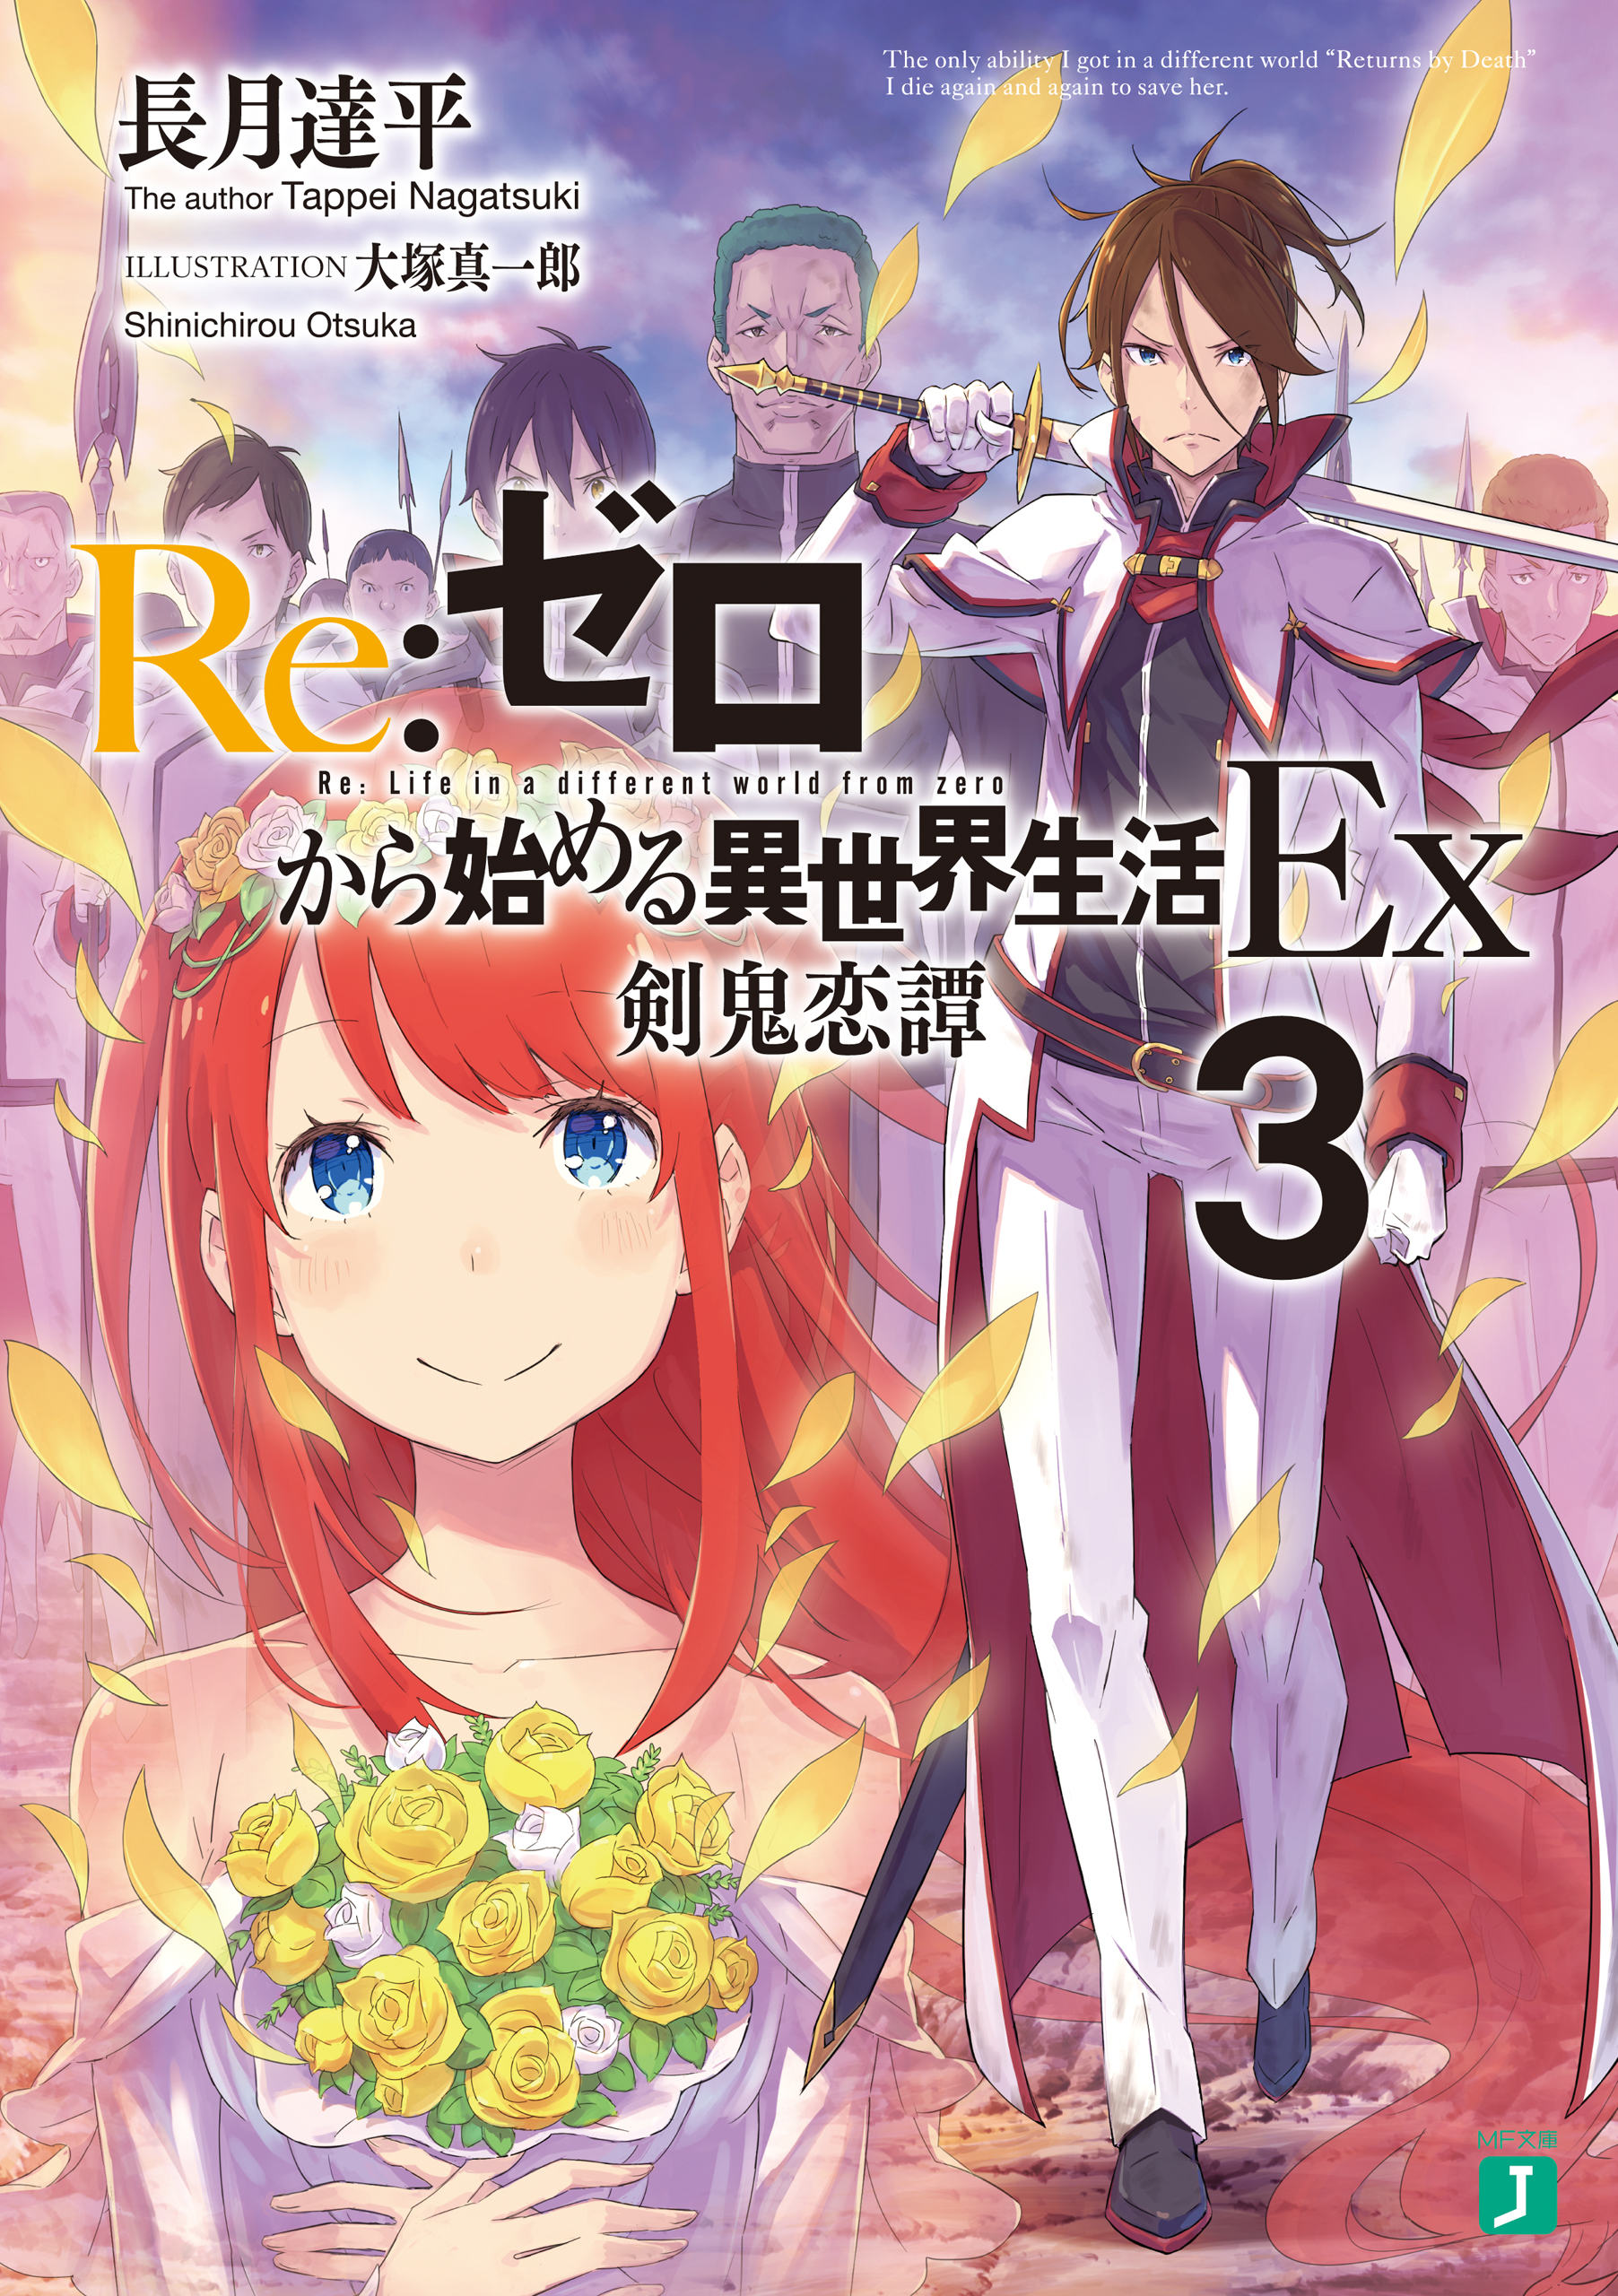 Re:Zero to Return With Season 3!, Anime News